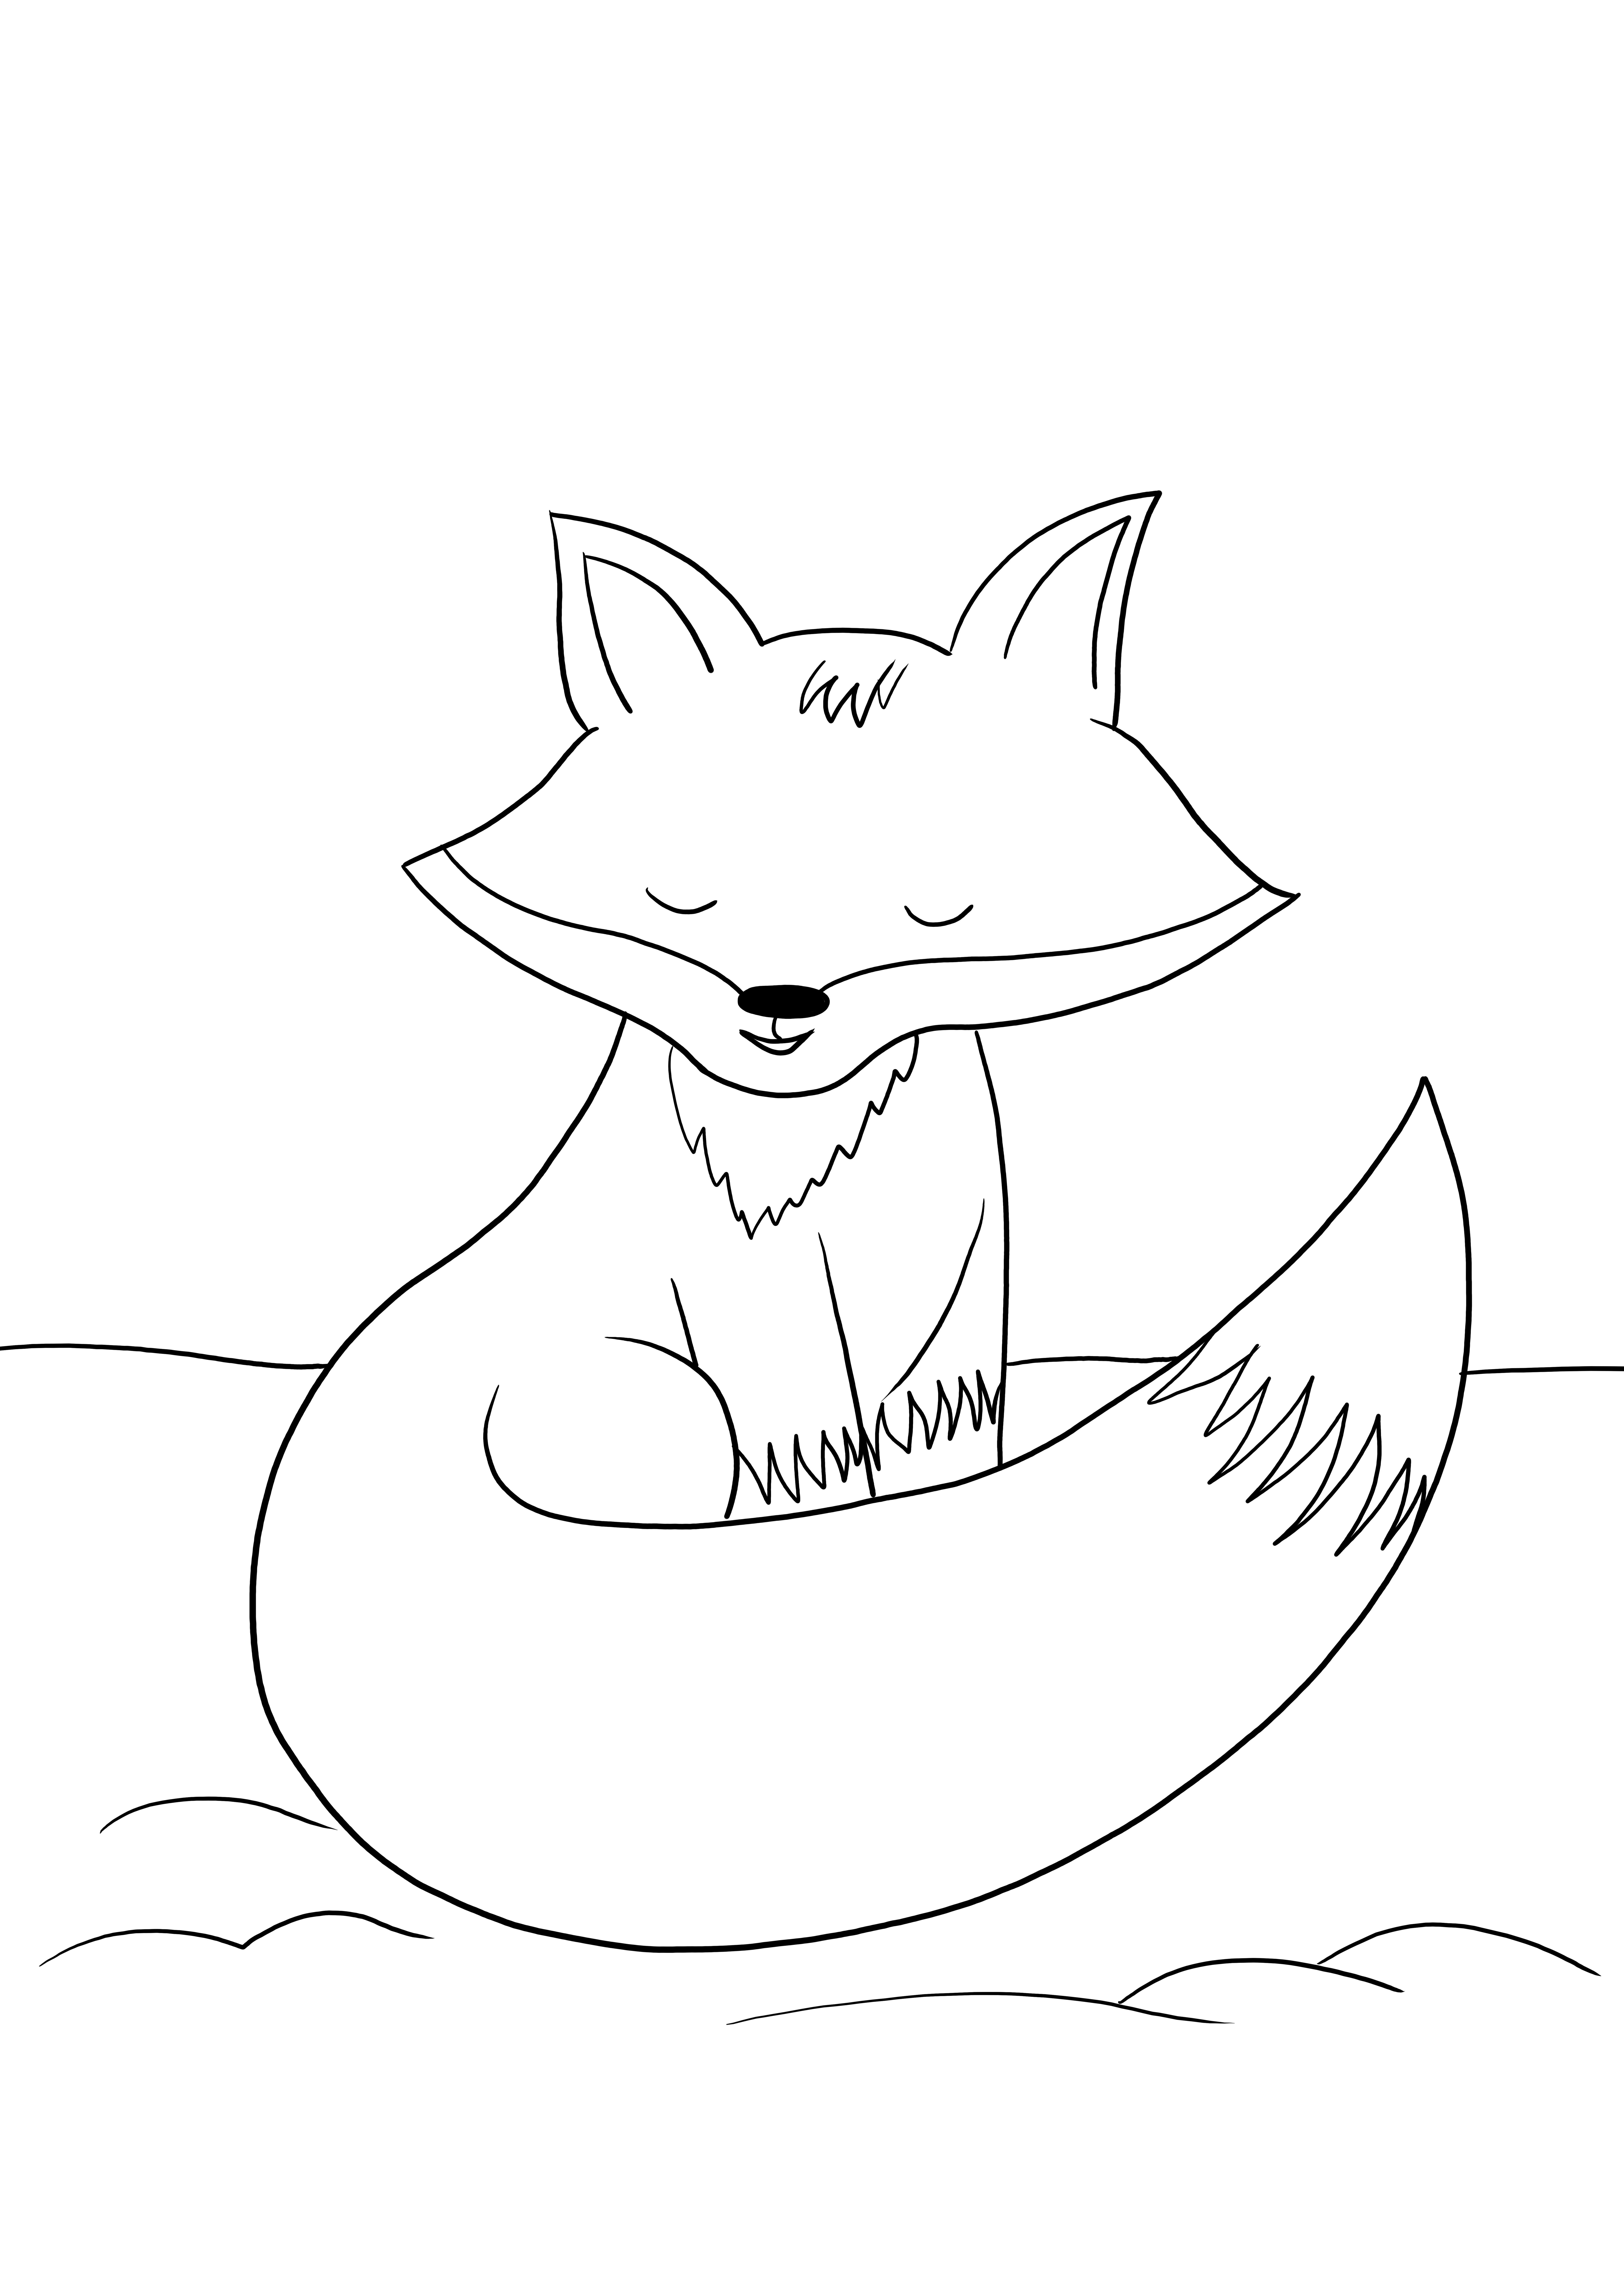 Un coloriage simple d'un renard à imprimer gratuitement